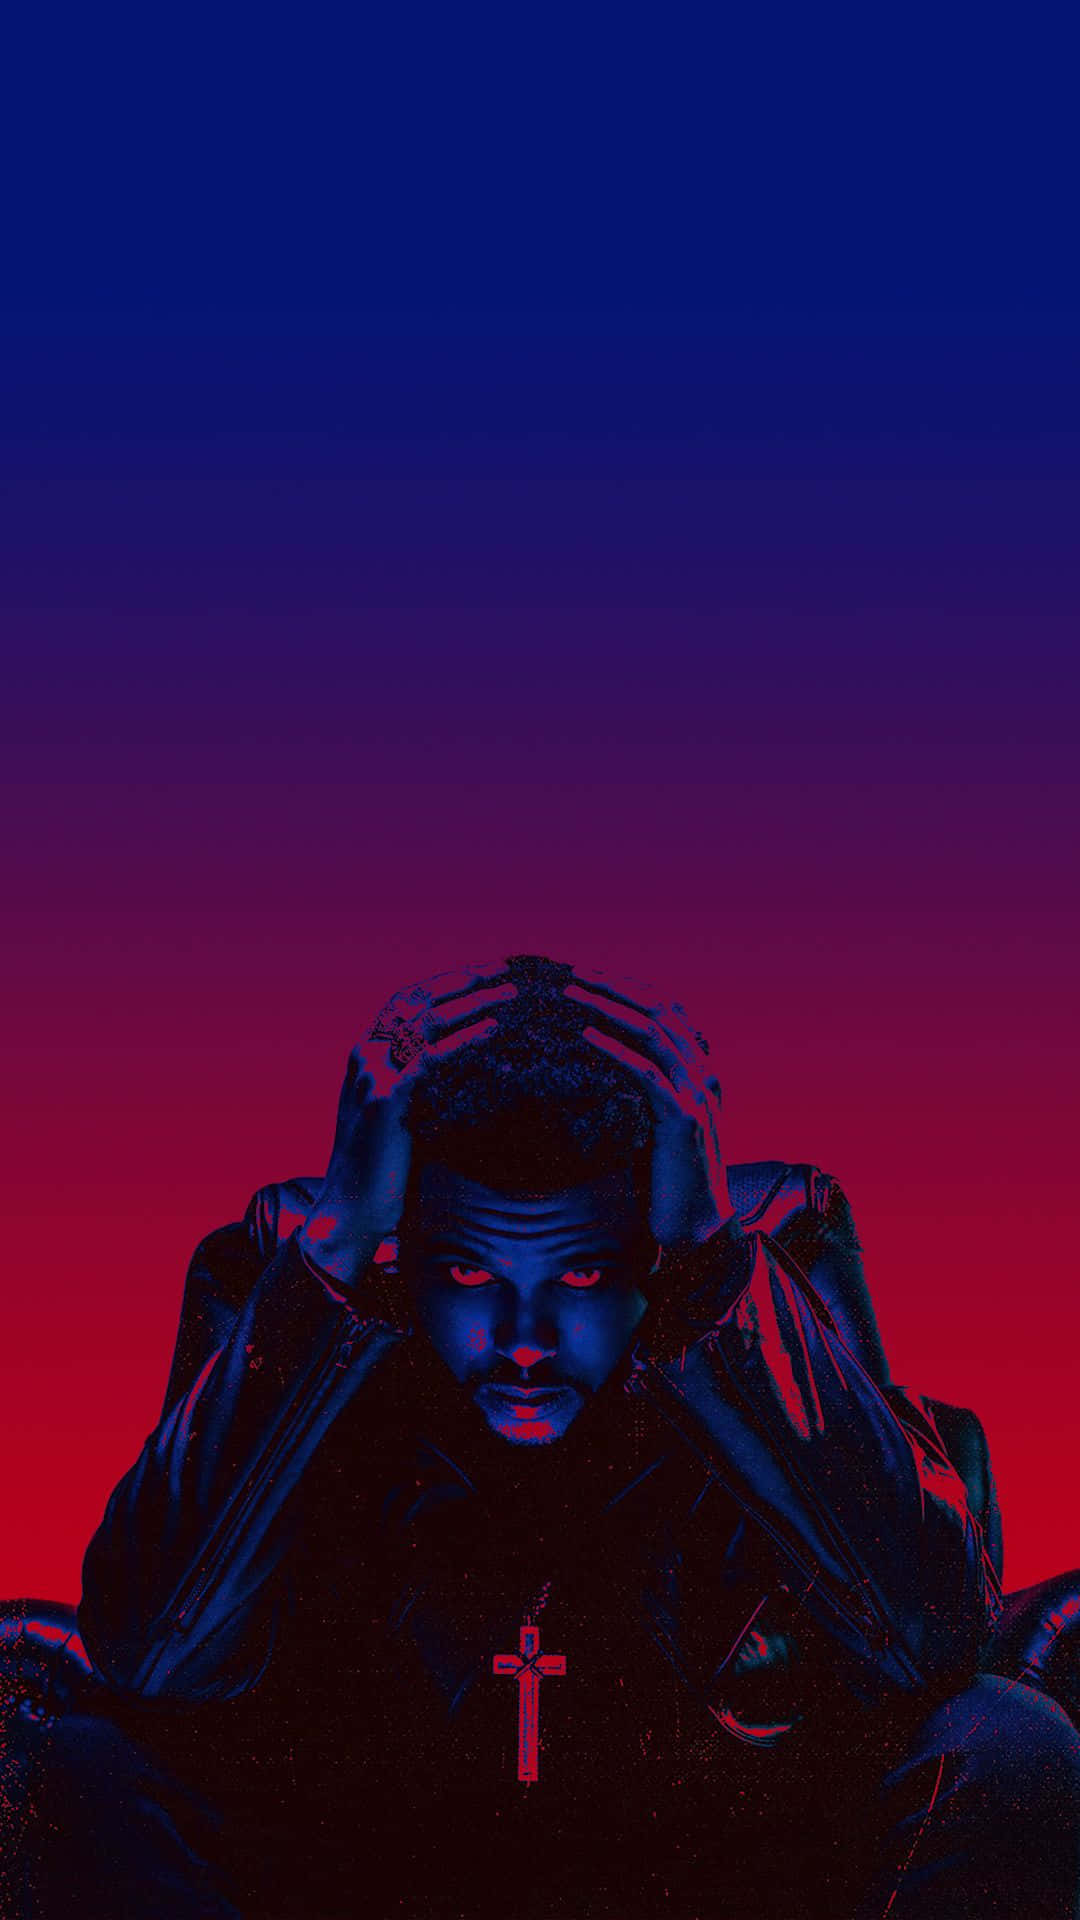 Elfondo De Pantalla Del Iphone Con Efecto De Desenfoque Y Gradiente De The Weeknd. Fondo de pantalla